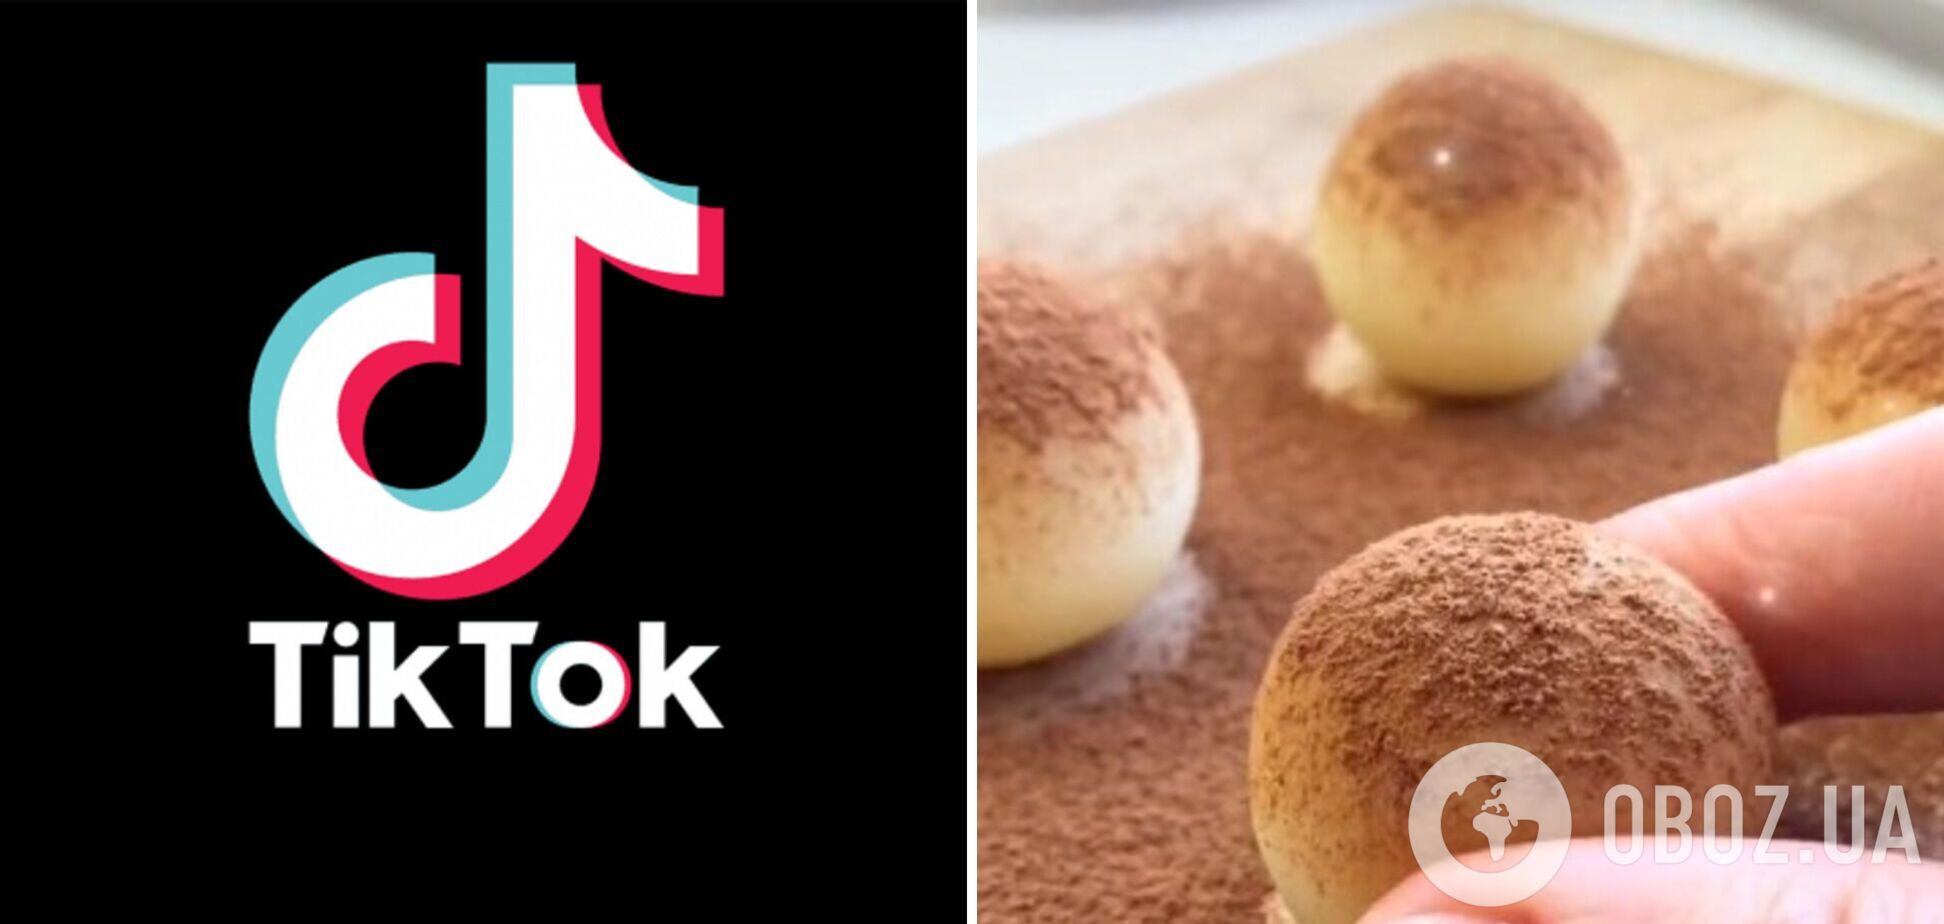 Безупречный десерт за 15 минут: Tik-Tok покорил новый кулинарный тренд